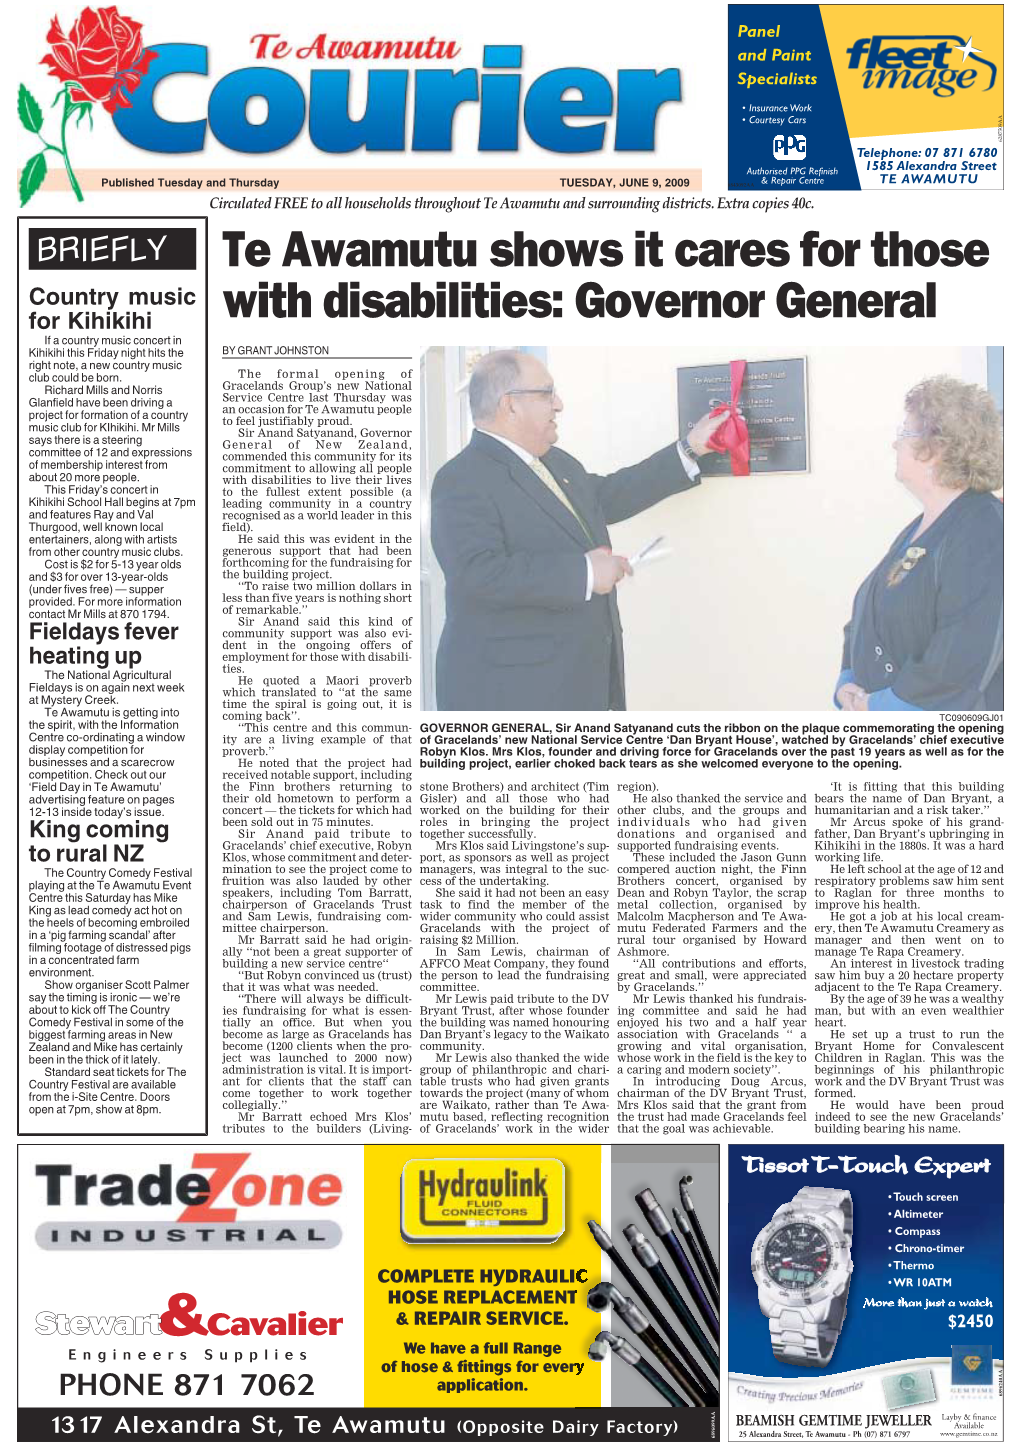 Te Awamutu Courier, Tuesday, June 9, 2009